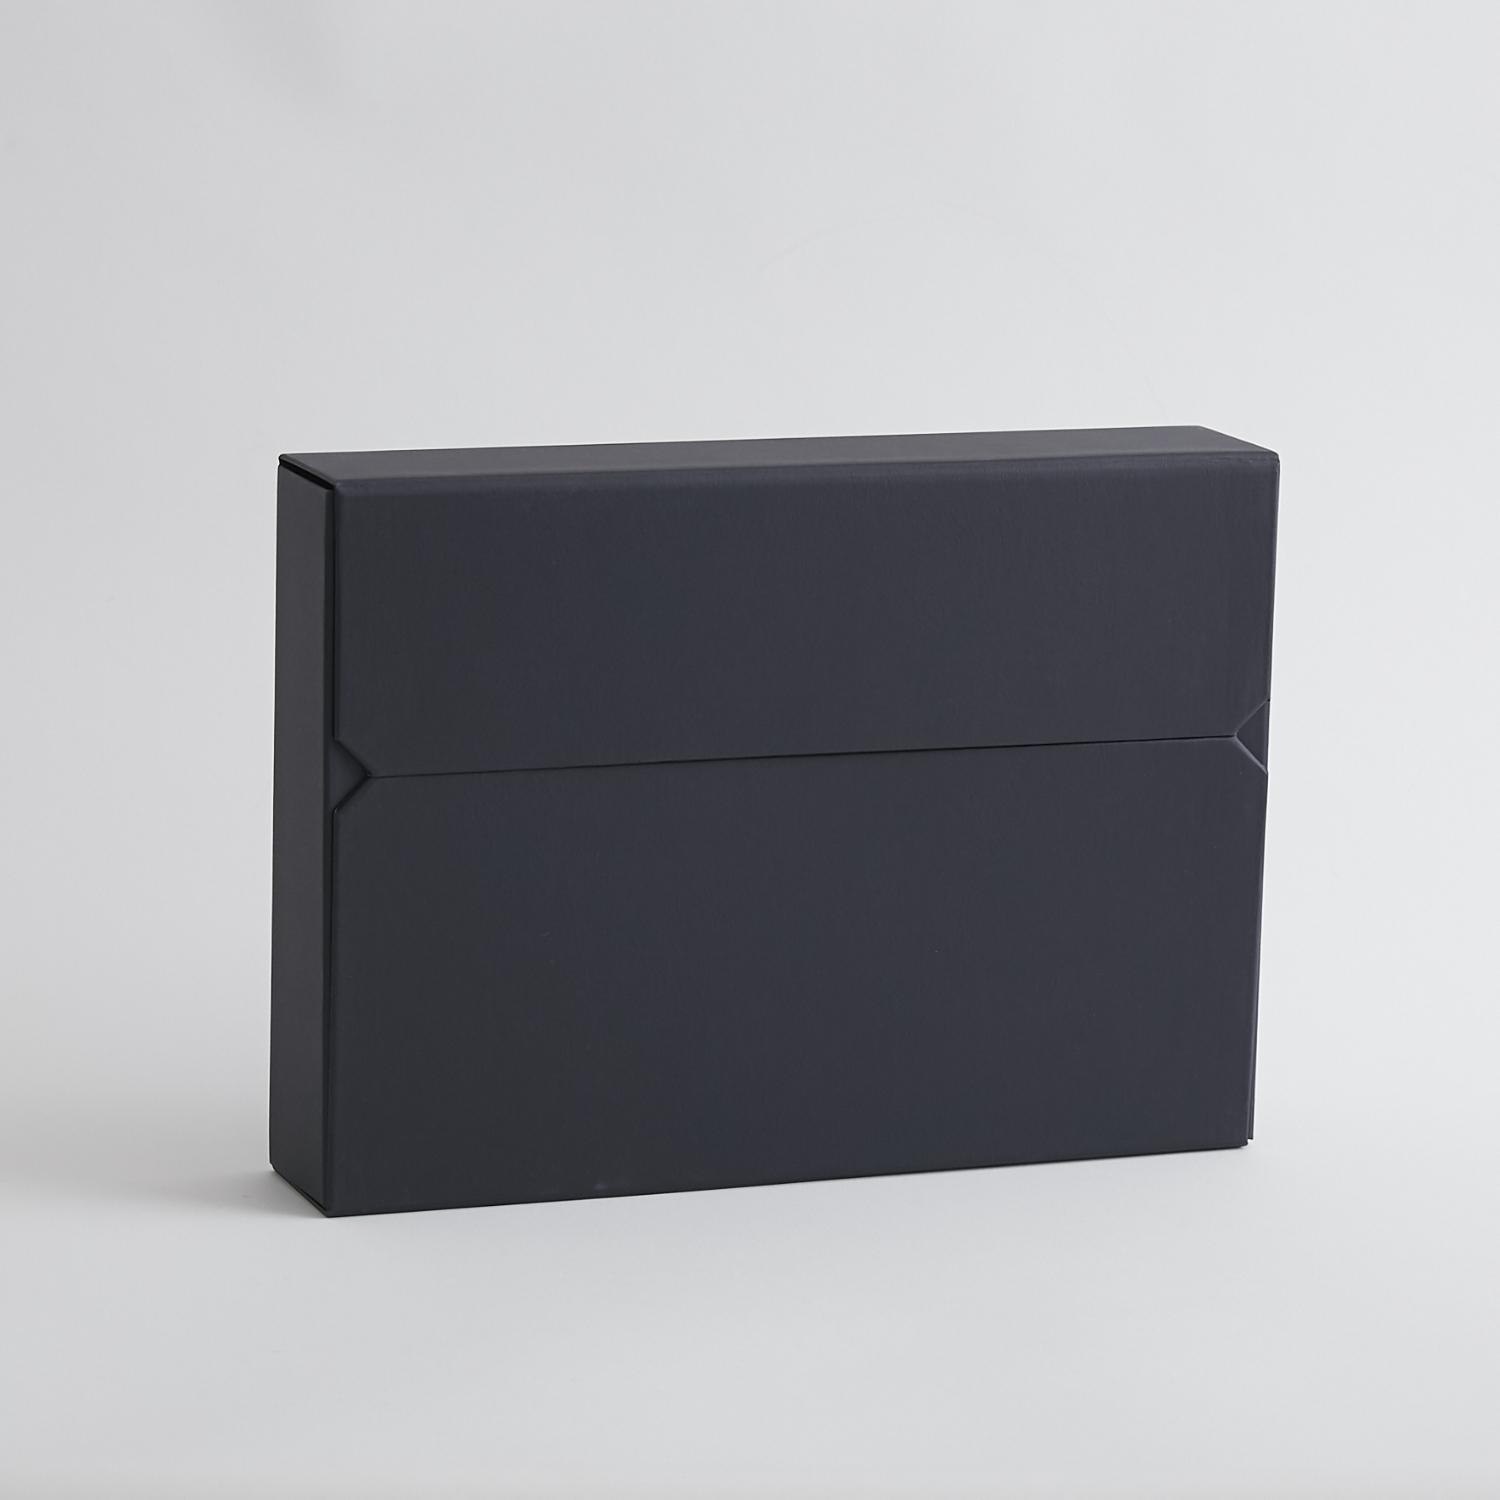 デスクの上をすっきり整頓 商舗 新登場 両開きドキュメントケース ISSHINDO PRODUCTS 60mm クロス貼タイプ ブラック ドキュメントケース